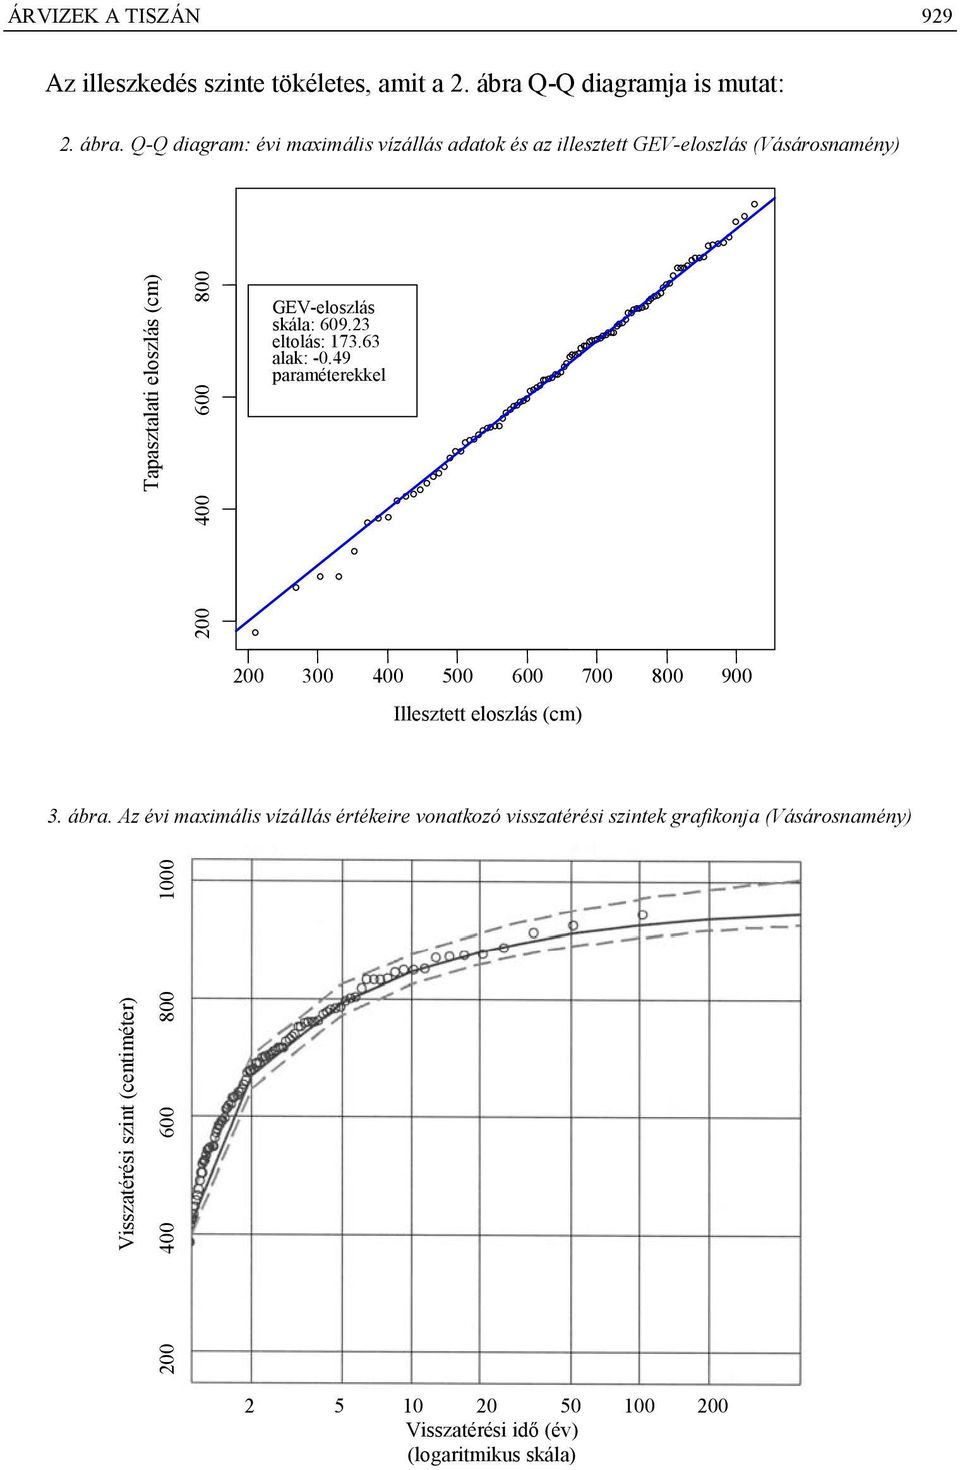 Q-Q diagram: évi maximális vízállás adatok és az illesztett GEV-eloszlás (Vásárosnamény) Tapasztalati eloszlás (cm) 800 600 400 GEV-eloszlás